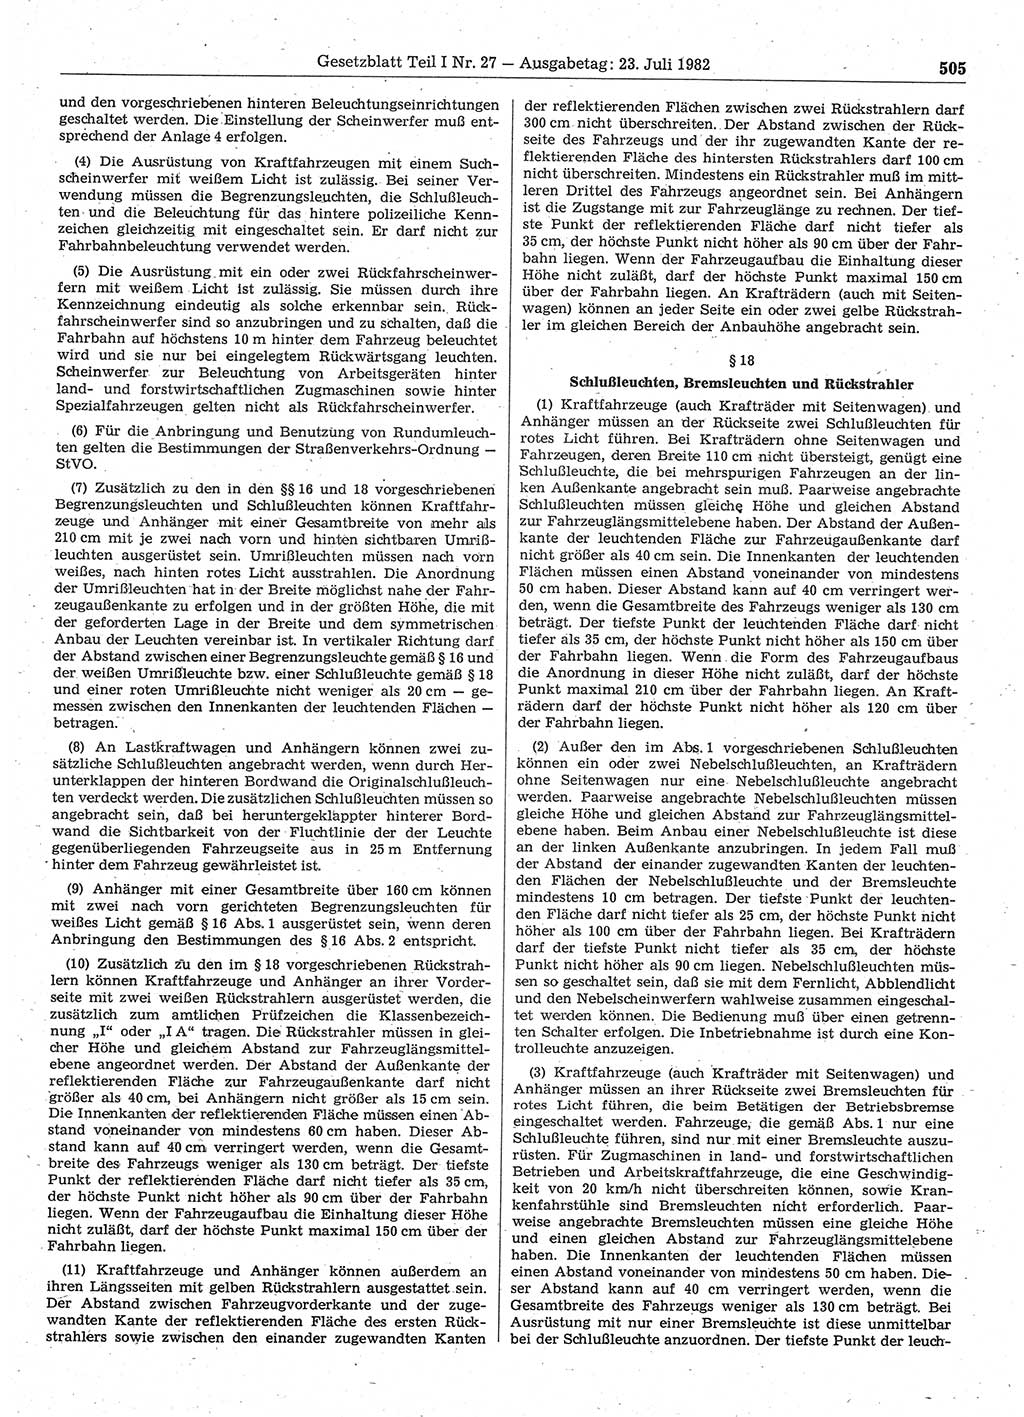 Gesetzblatt (GBl.) der Deutschen Demokratischen Republik (DDR) Teil Ⅰ 1982, Seite 505 (GBl. DDR Ⅰ 1982, S. 505)